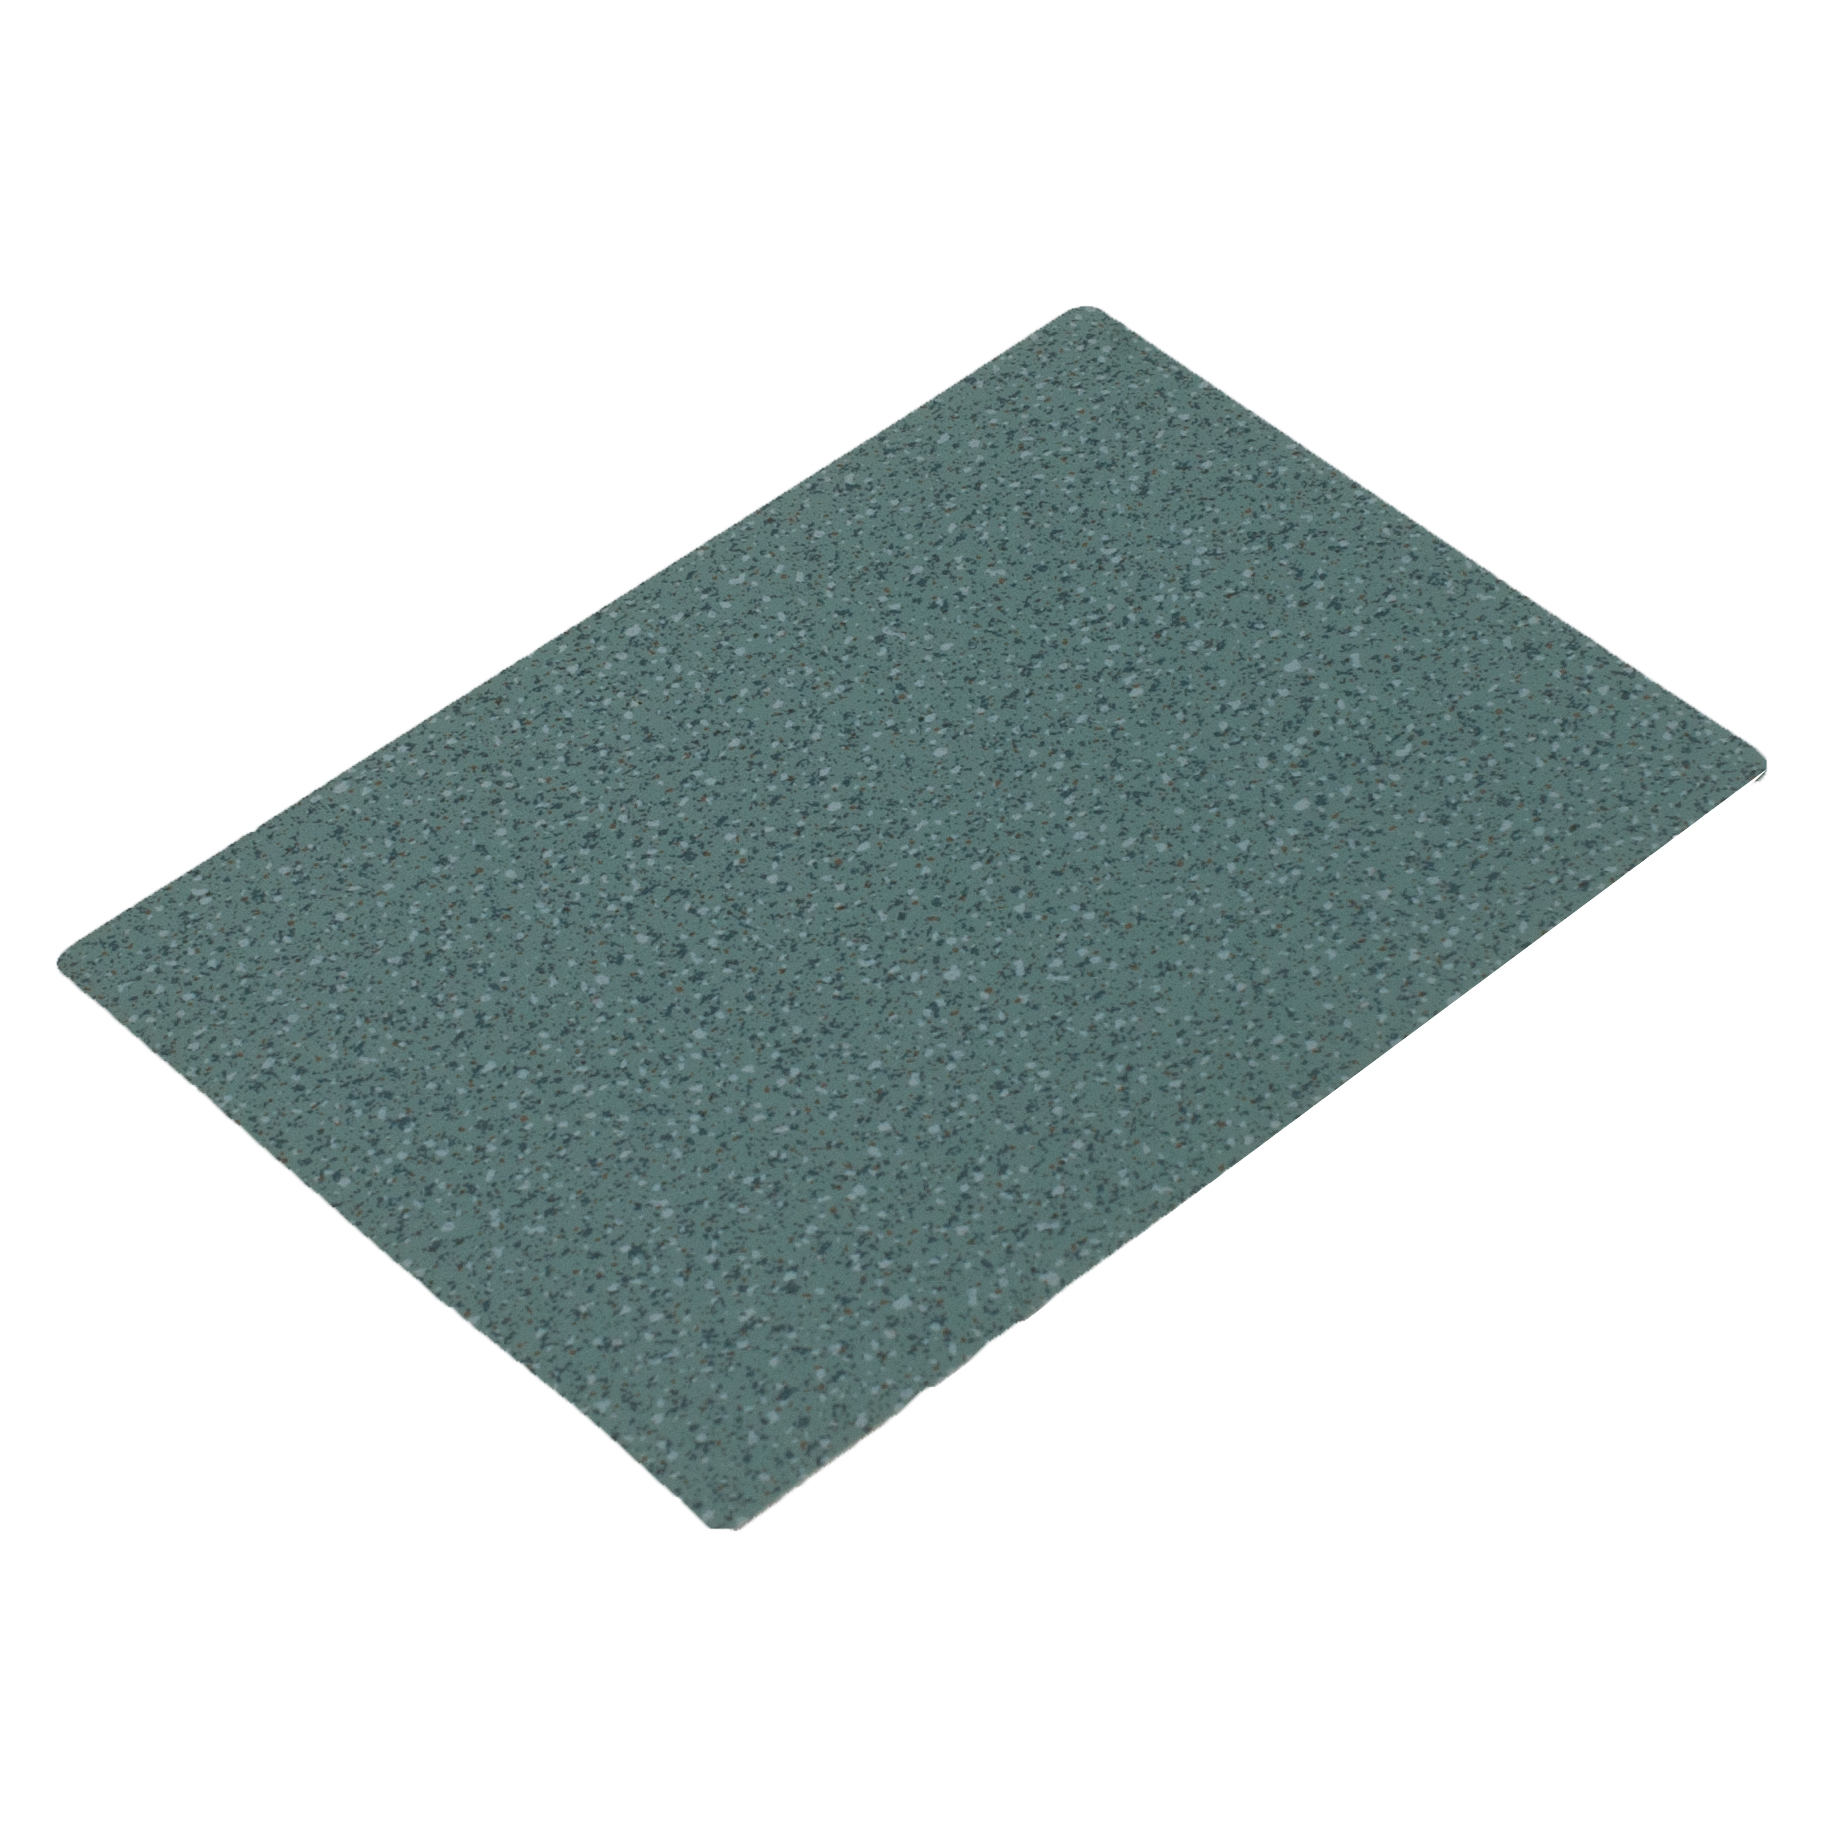 Industrial PVC Flooring For Basement Tiles